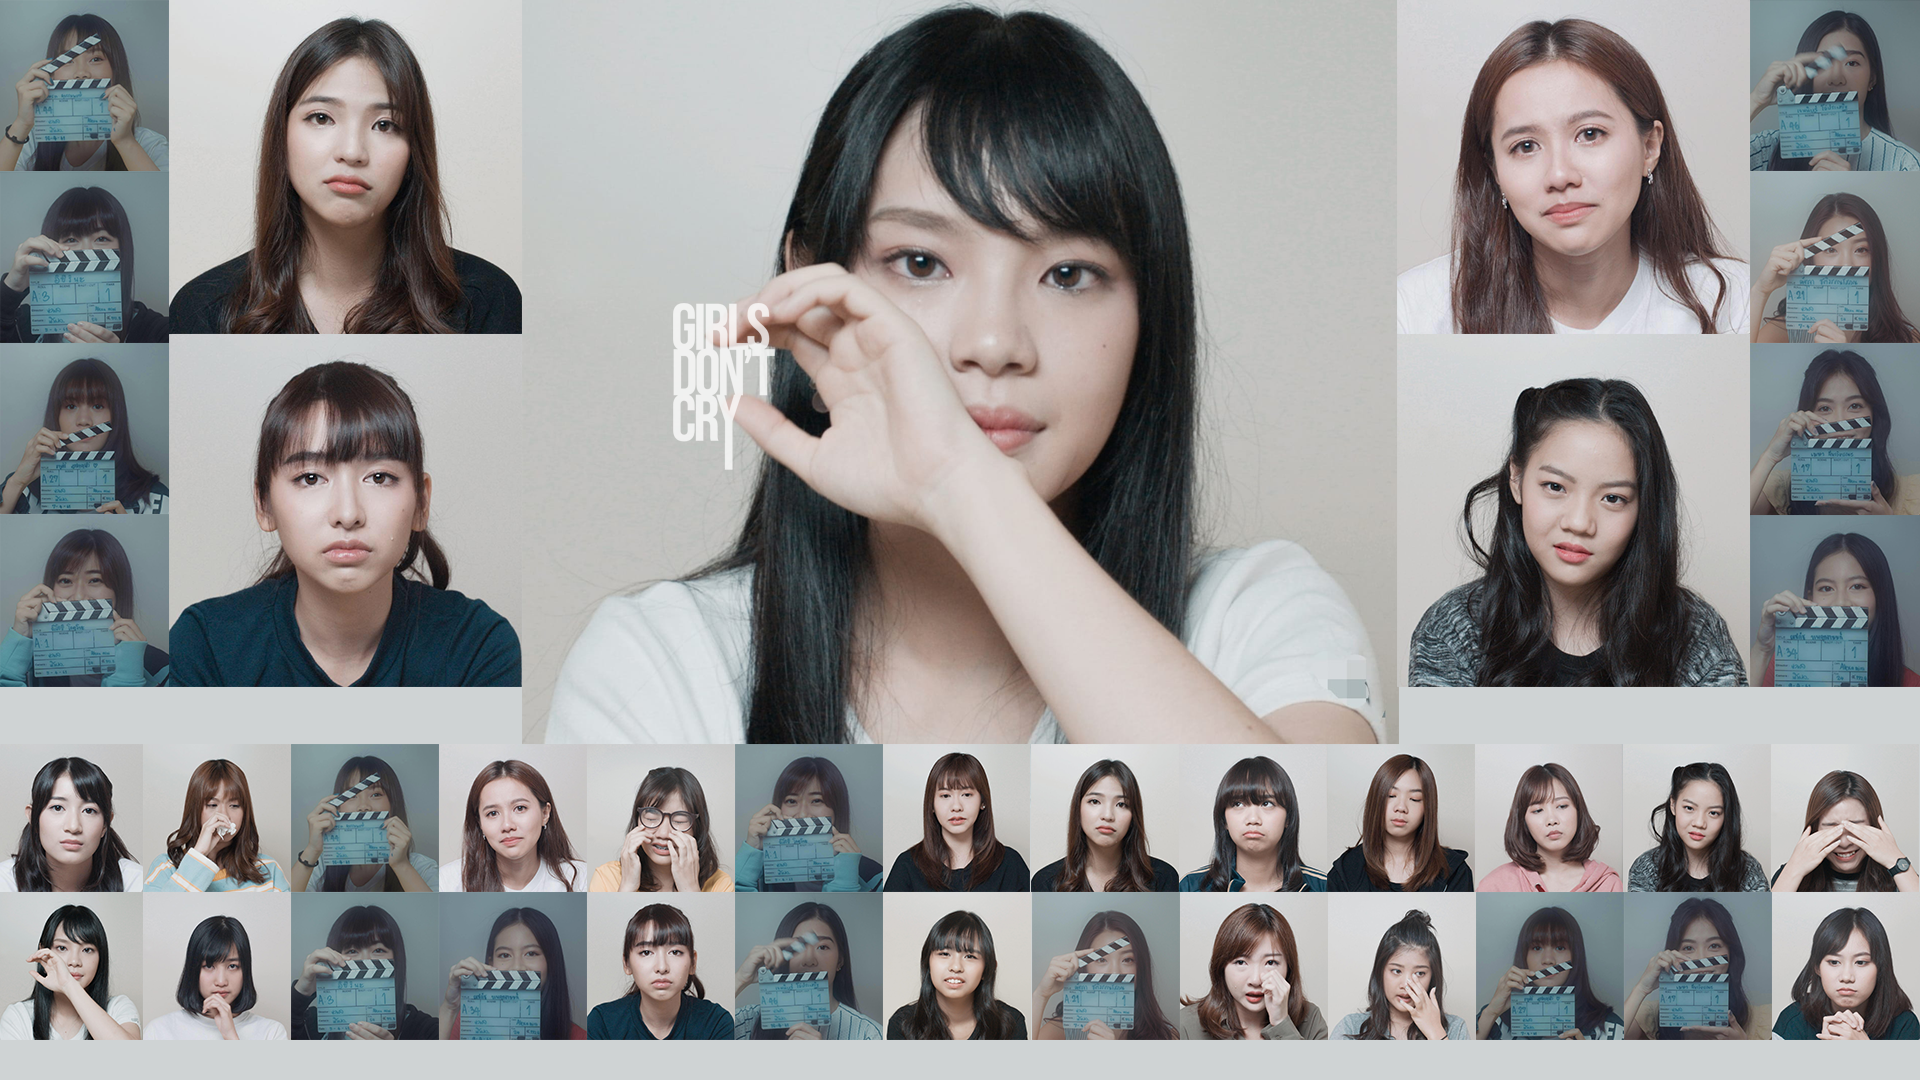 ส่องรูปโปรไฟล์ BNK48 รุ่นที่ 1 โปรโมทหนัง BNK48 : GIRLS DON’T CRY